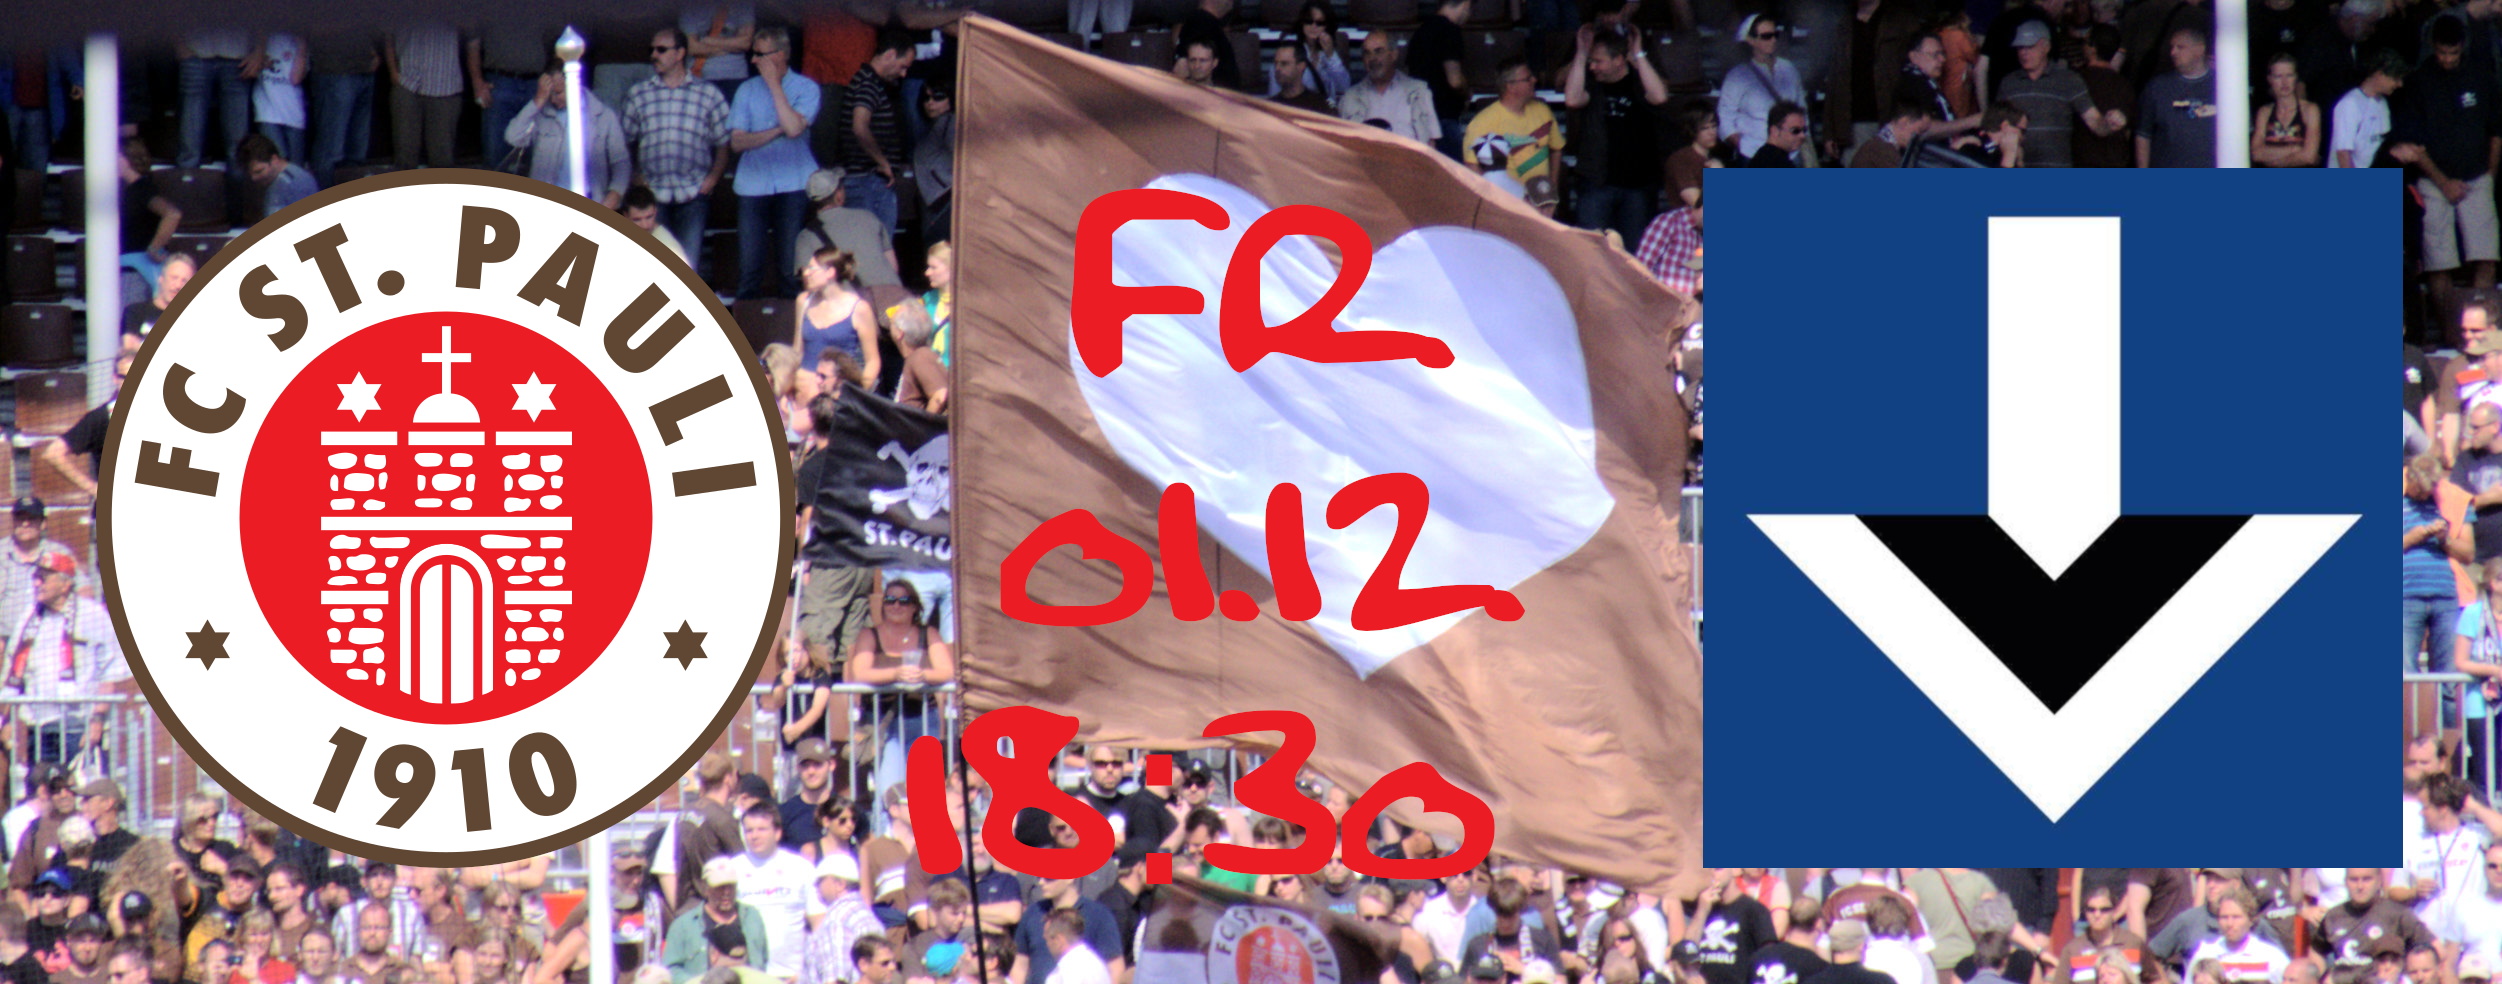 Wappen von FC St. Pauli und der Vorstadt vor der Herzensflagge der Nordkurve im Millerntor-Stadion mit der Anpfiffzeit des Spiels